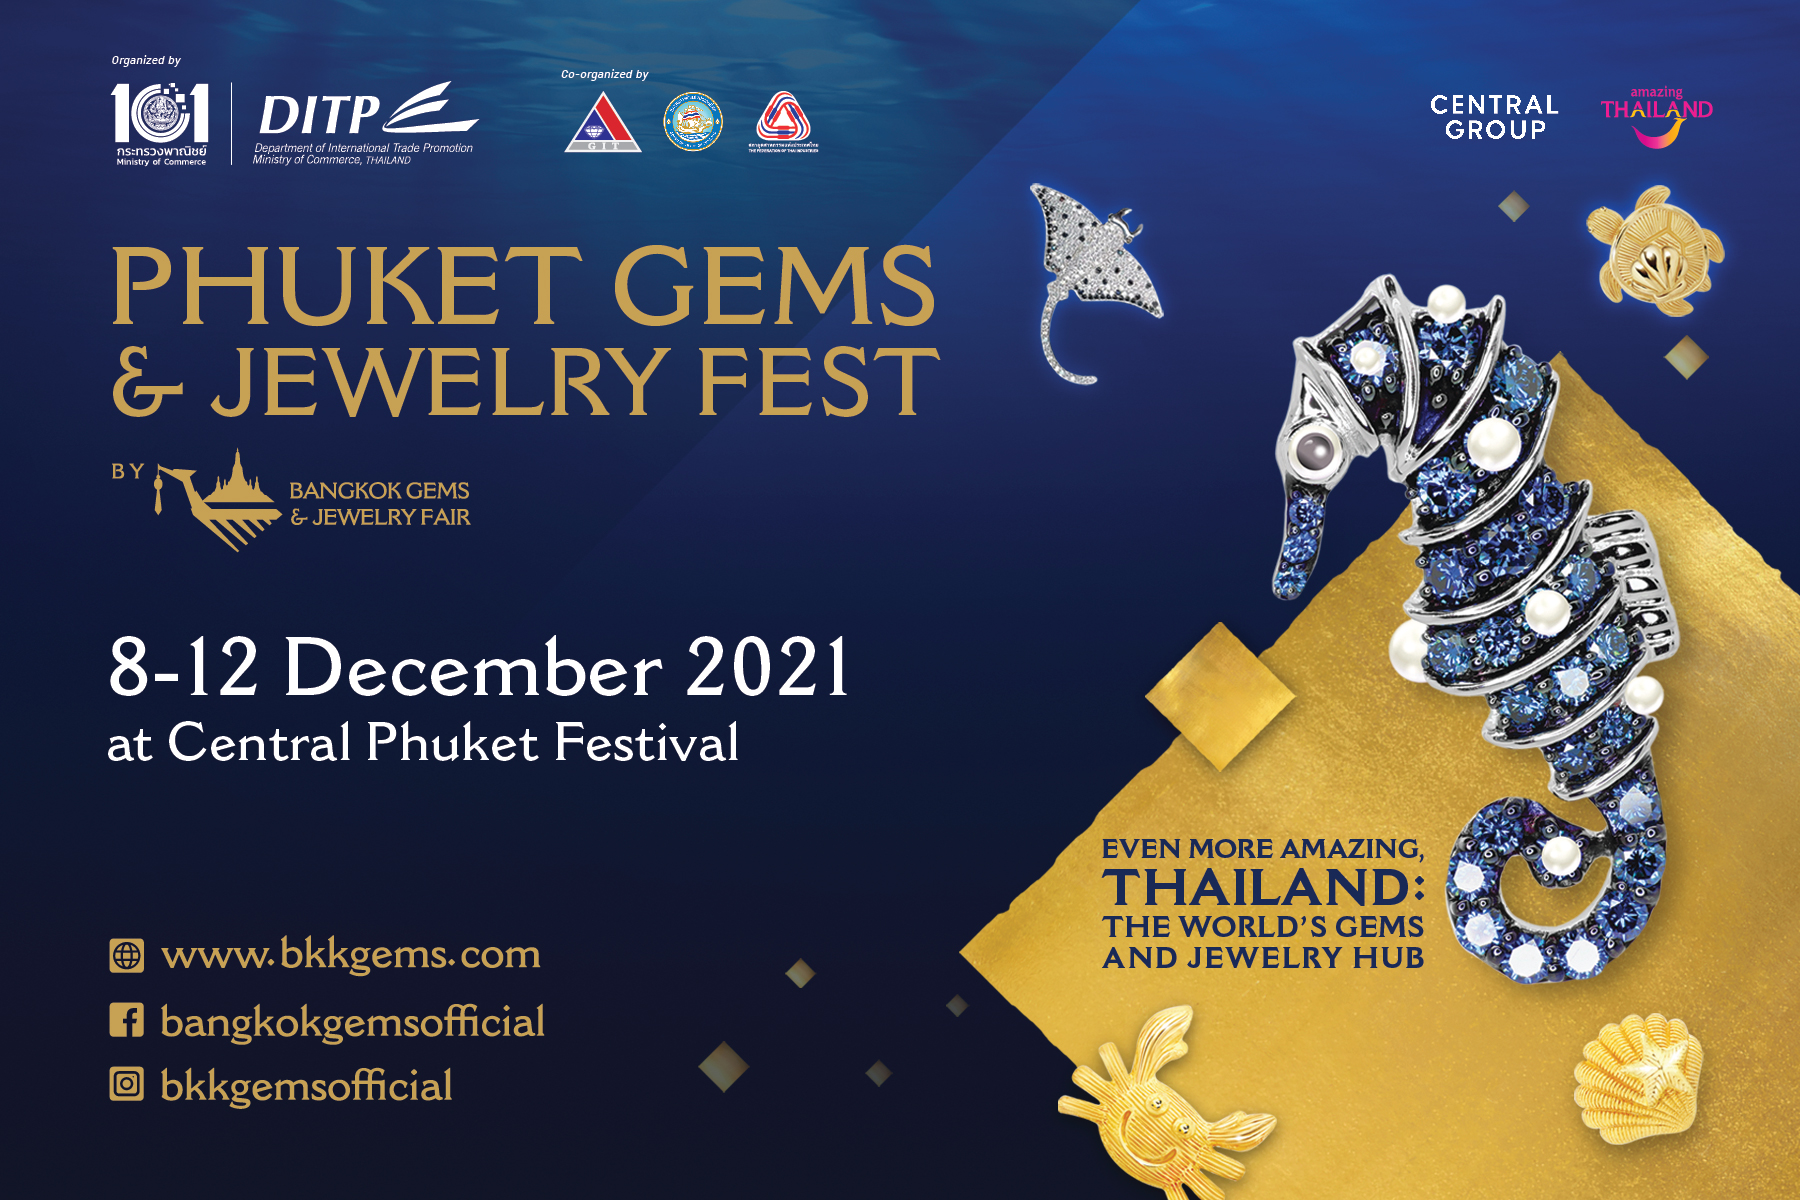 DITP จับมือภาคเอกชนและจังหวัดภูเก็ต                                                                           เตรียมจัดงาน “Phuket Gems & Jewelry Fest”                                                                      สร้างเวทีการค้าให้ผู้ส่งออกอัญมณีและเครื่องประดับไทย